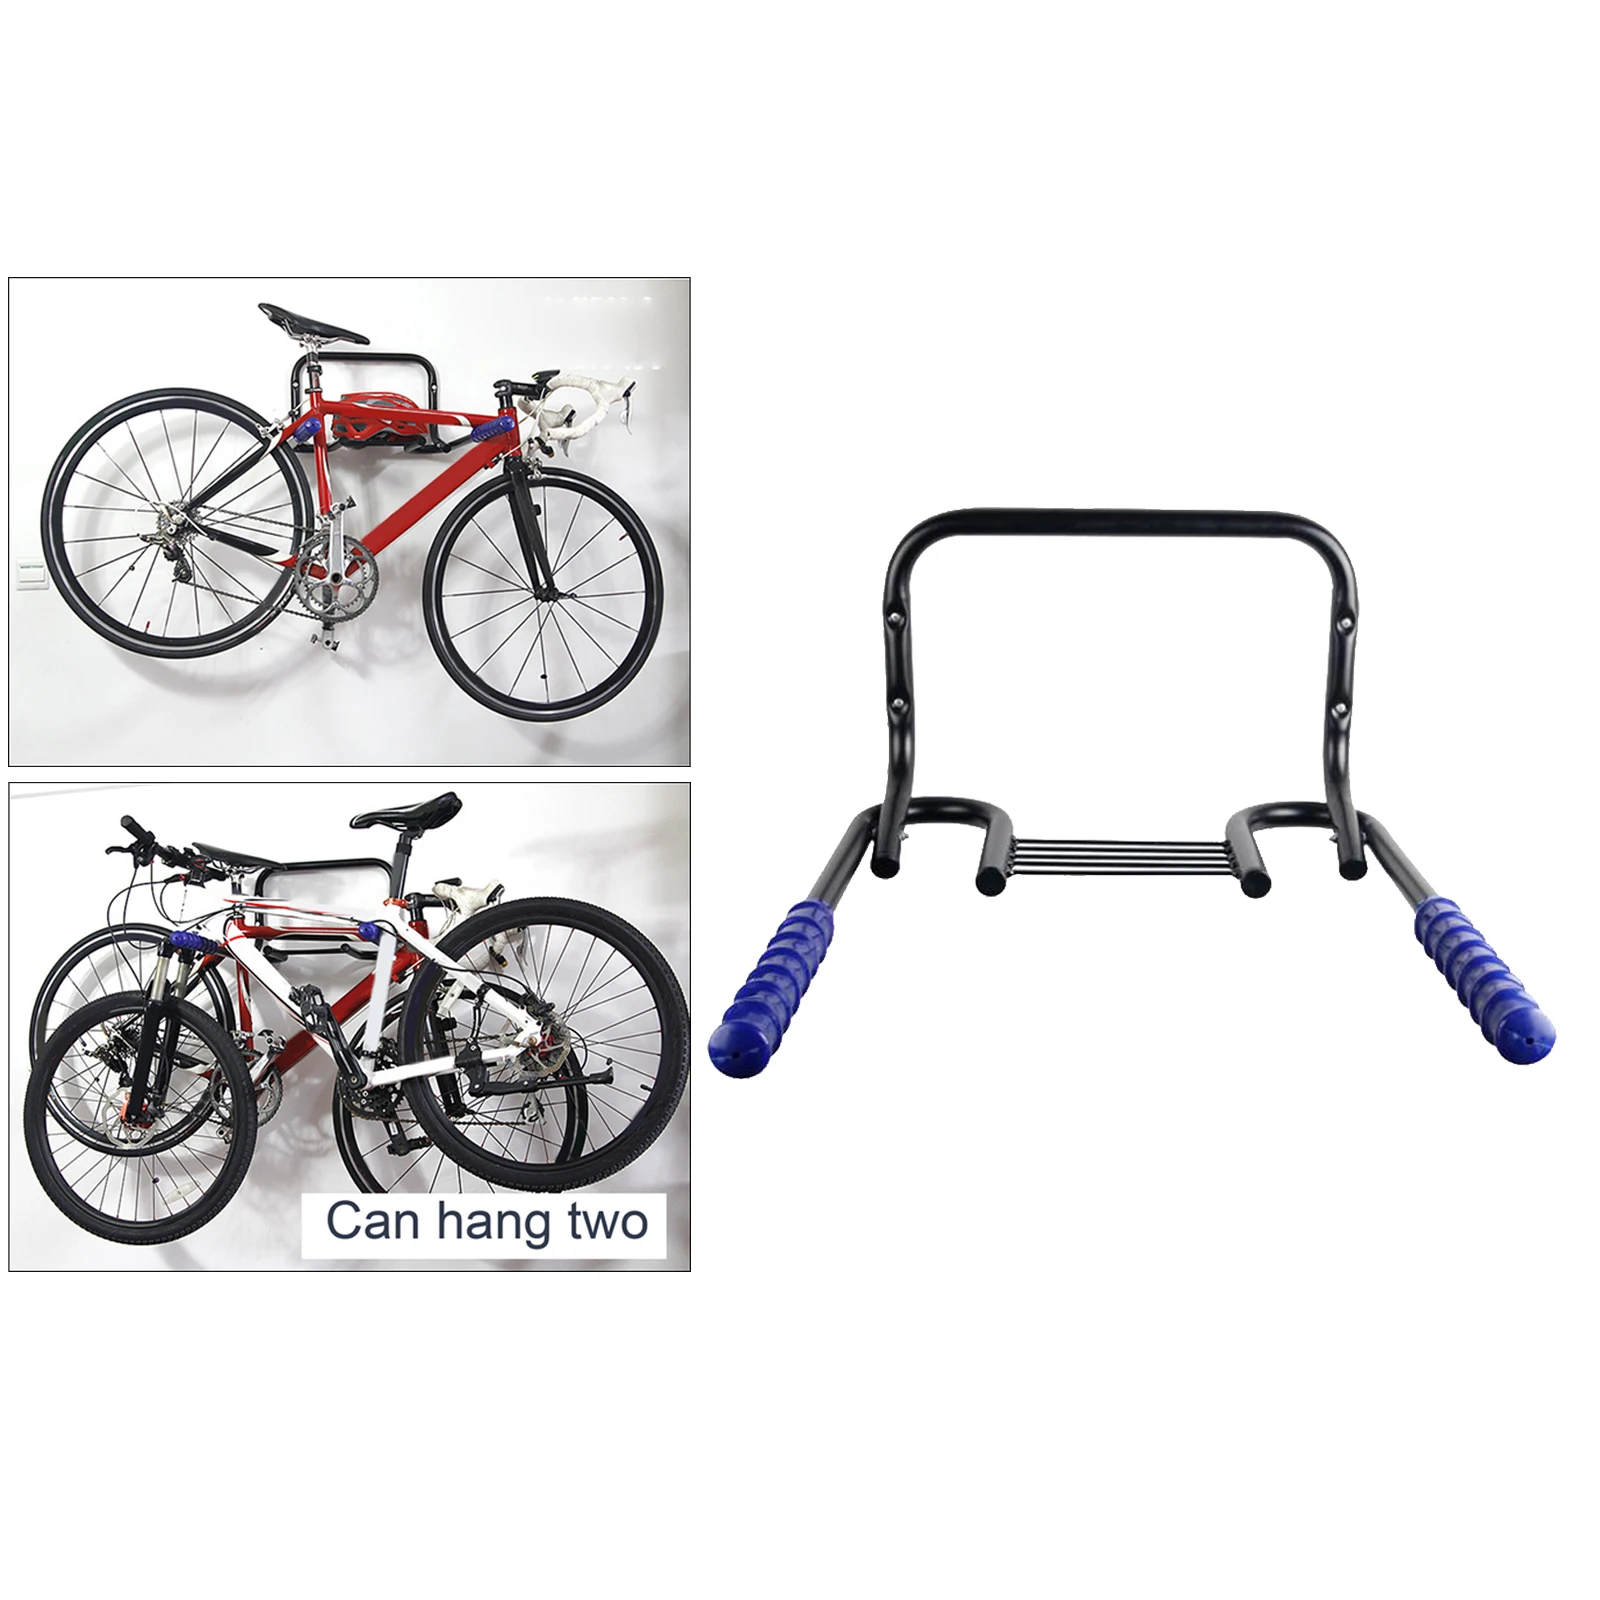 Metal Wall Mount Bike Rack Storage er Bicycle Holder Hook ing on Garage Wall with Fitting Screws